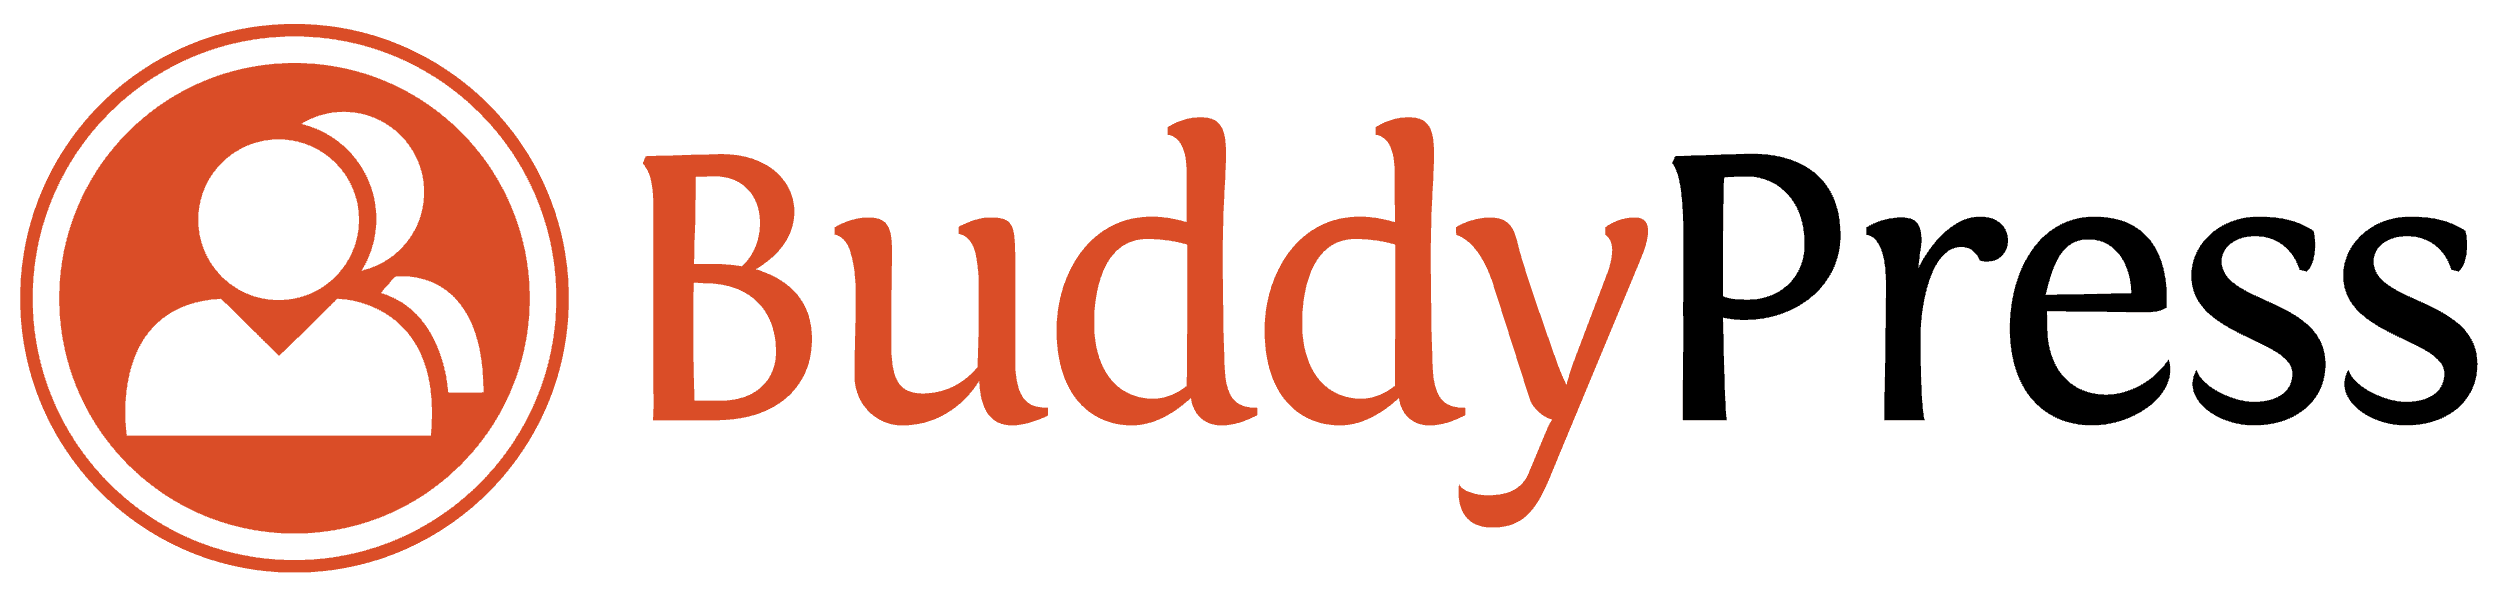 BuddyPress - Sosialt nettverk for Wordpress